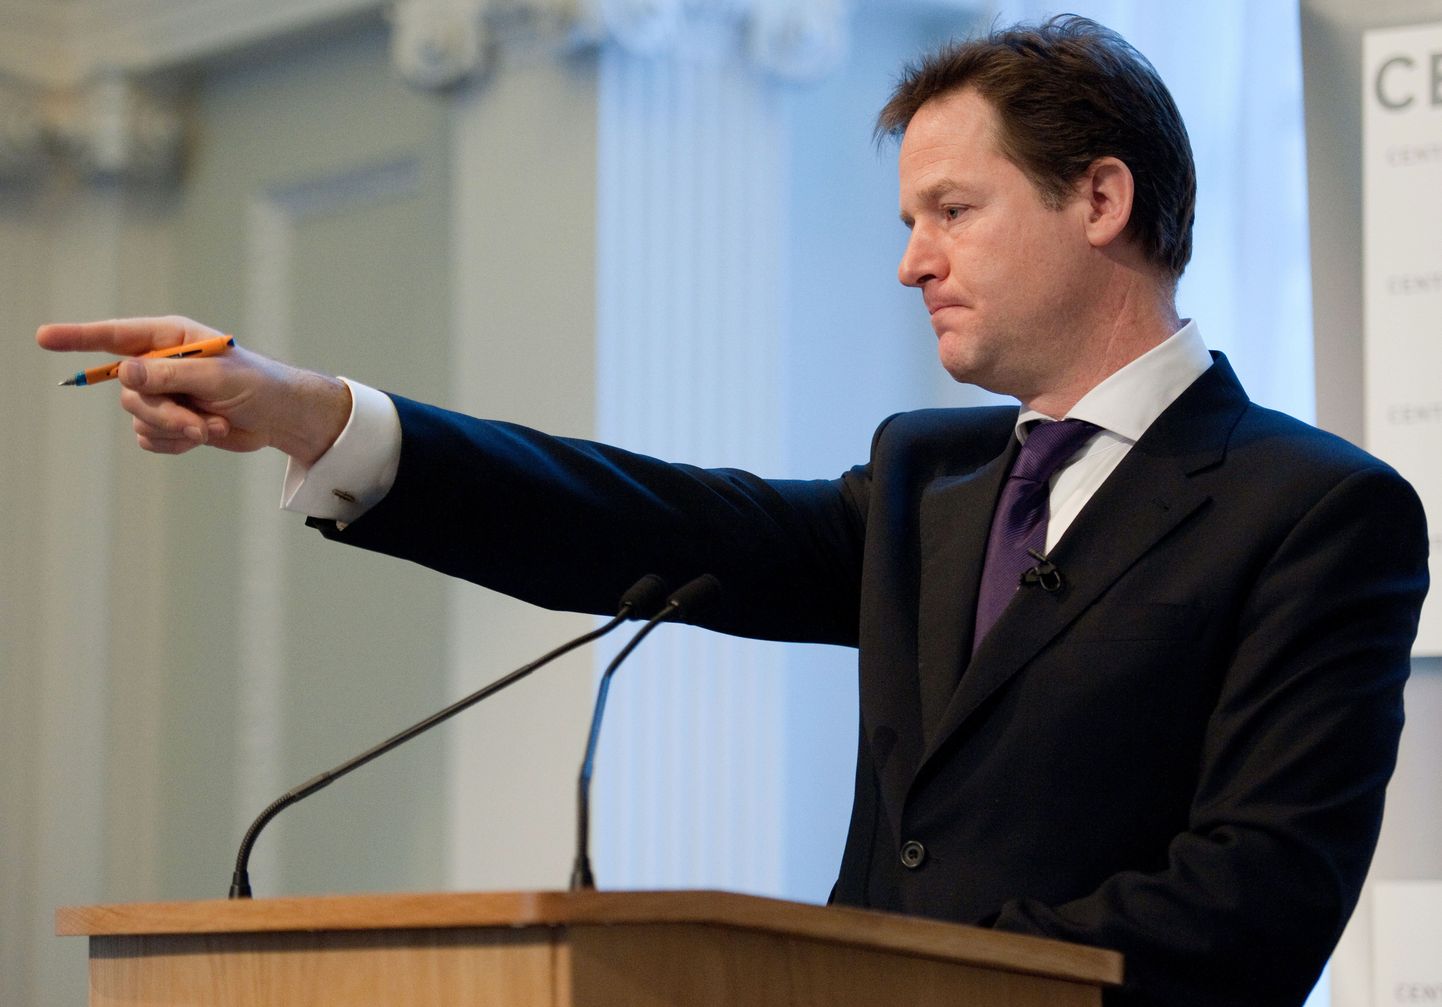 Briti pankadel kästakse rahvusvähemustele rohkem raha laenata. Pildild Suurbritannia asepeaminister Nick Clegg.